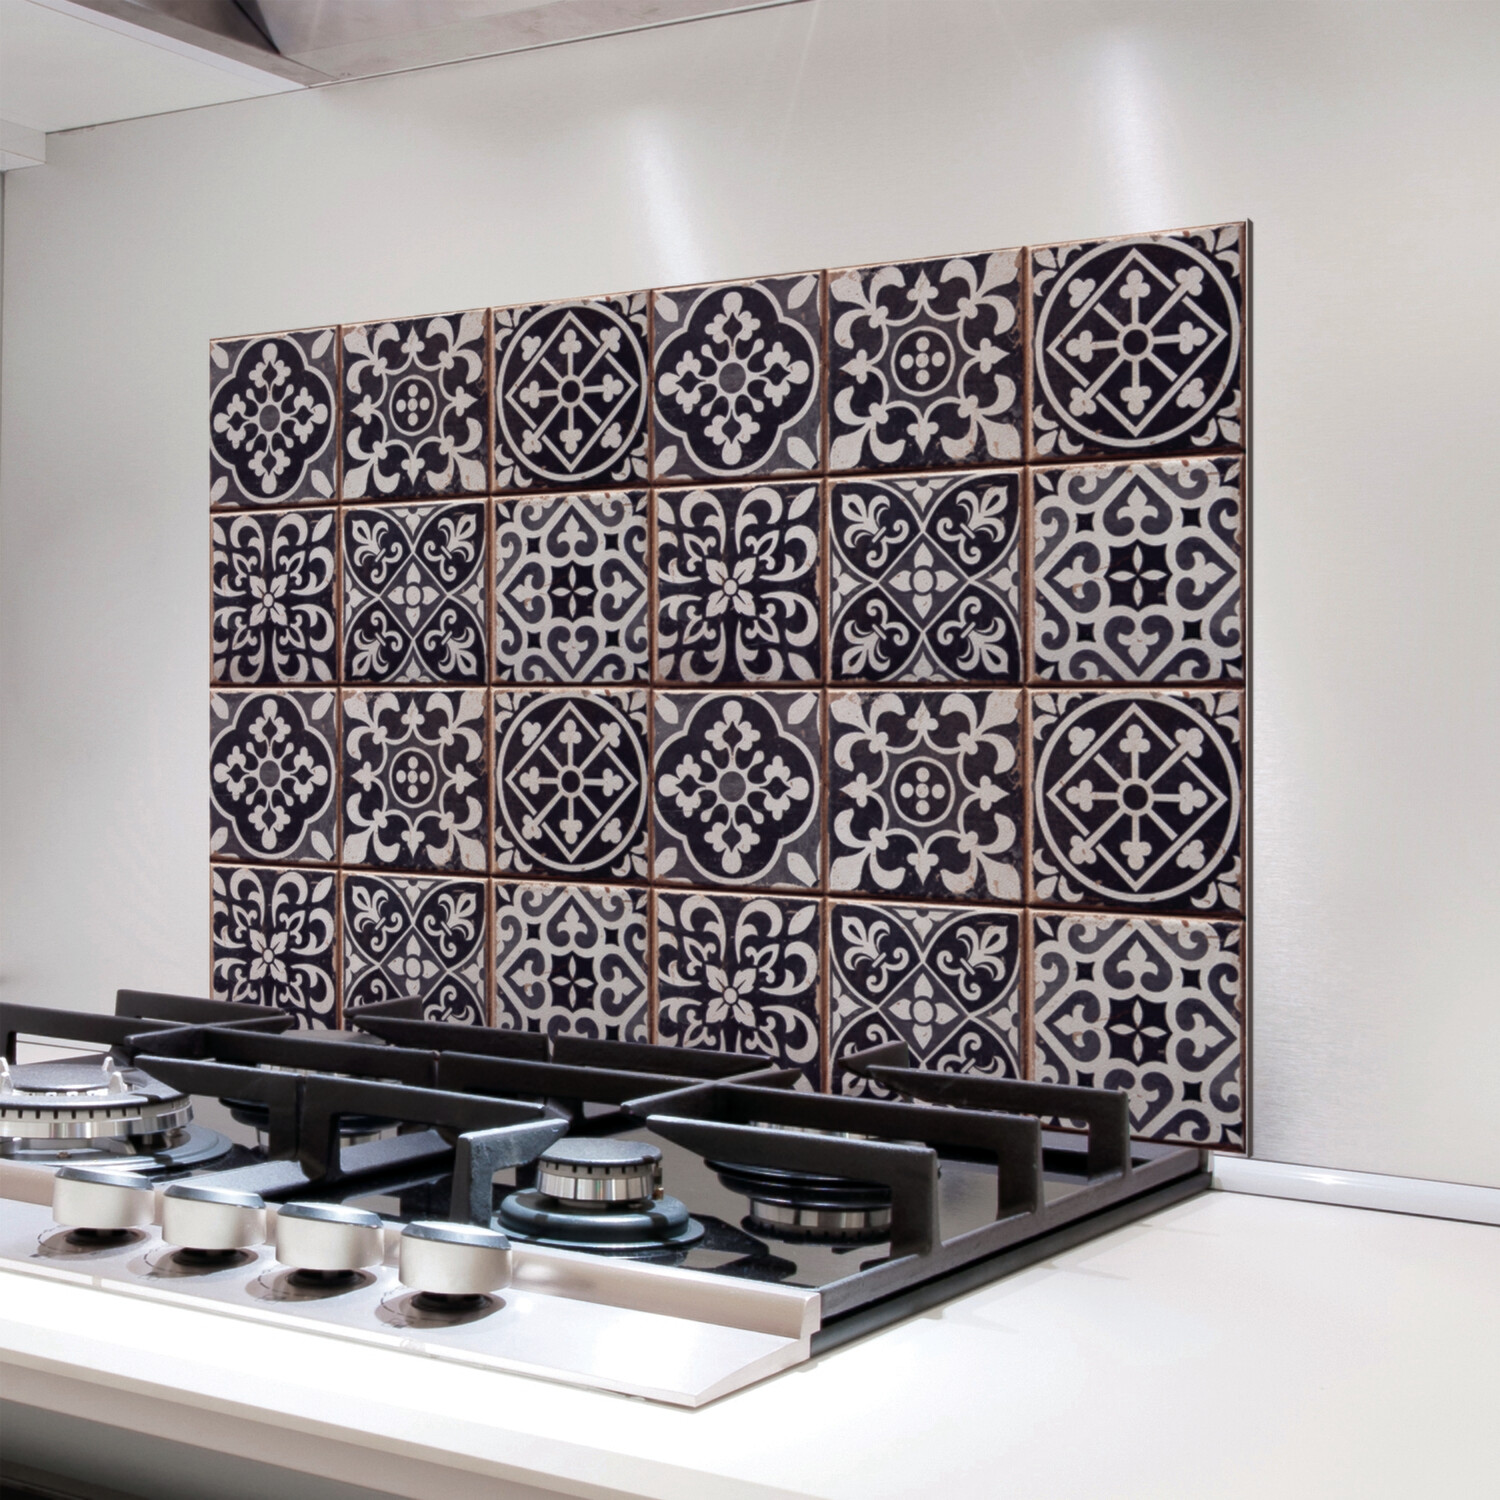 Tiles Azulejos Self Adhesive Kitchen Panel